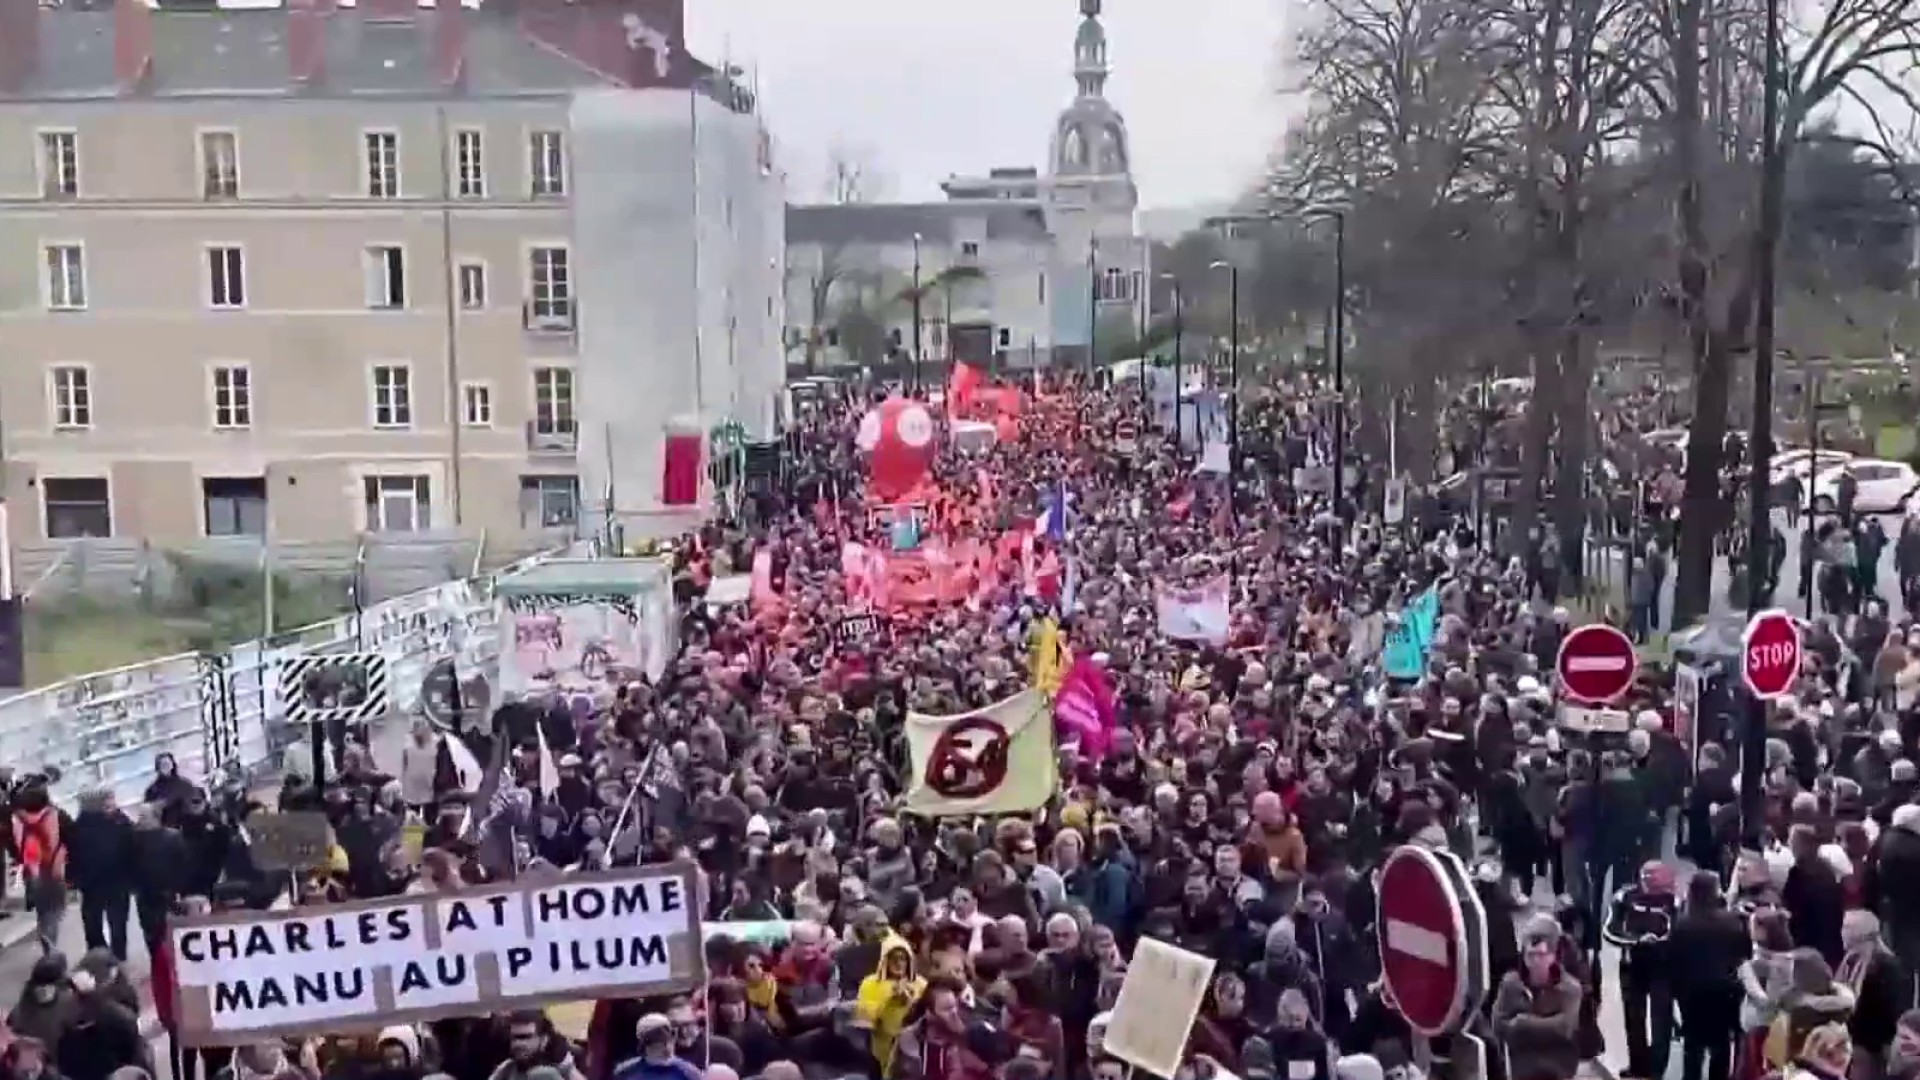 فرانس میں پنشن اصلاحات کی مخالفت میں مظاہرے پھر ہوئے تیز